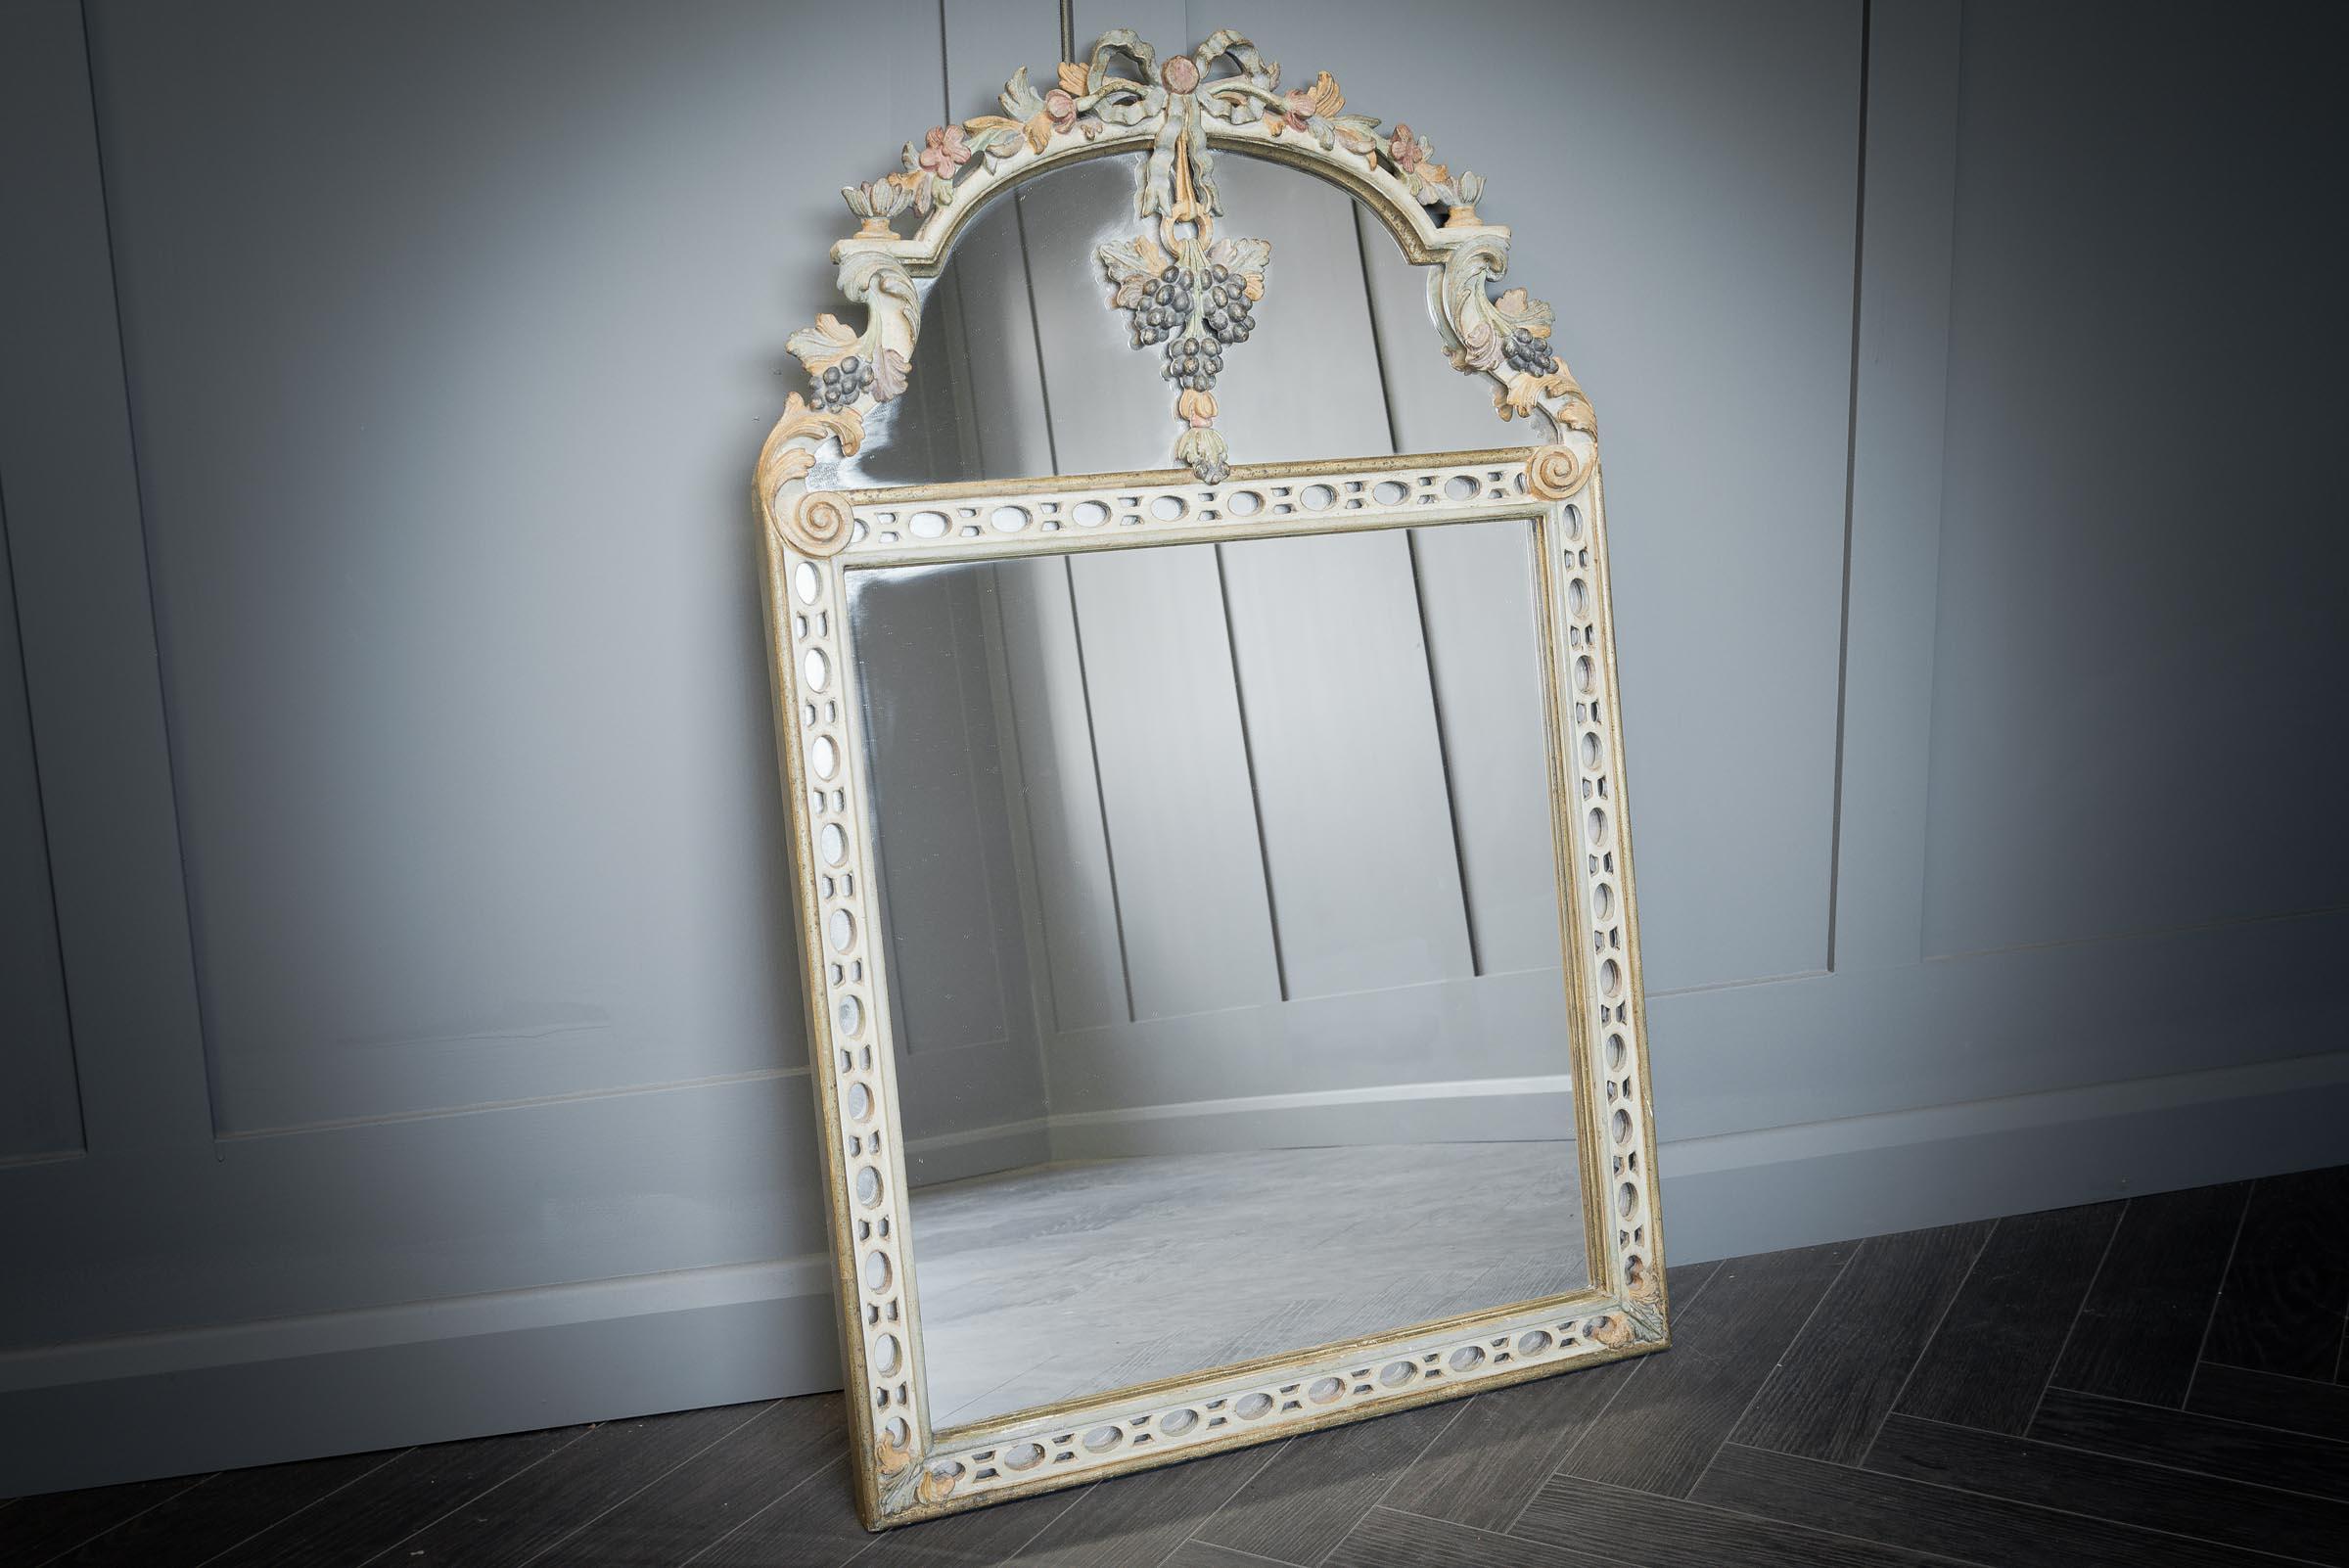 Ce miroir en bois sculpté à la main, délicat et élégant, serait un ajout parfait à une chambre ou un hall d'entrée. Les délicates sculptures florales ajoutent une douceur féminine au miroir.